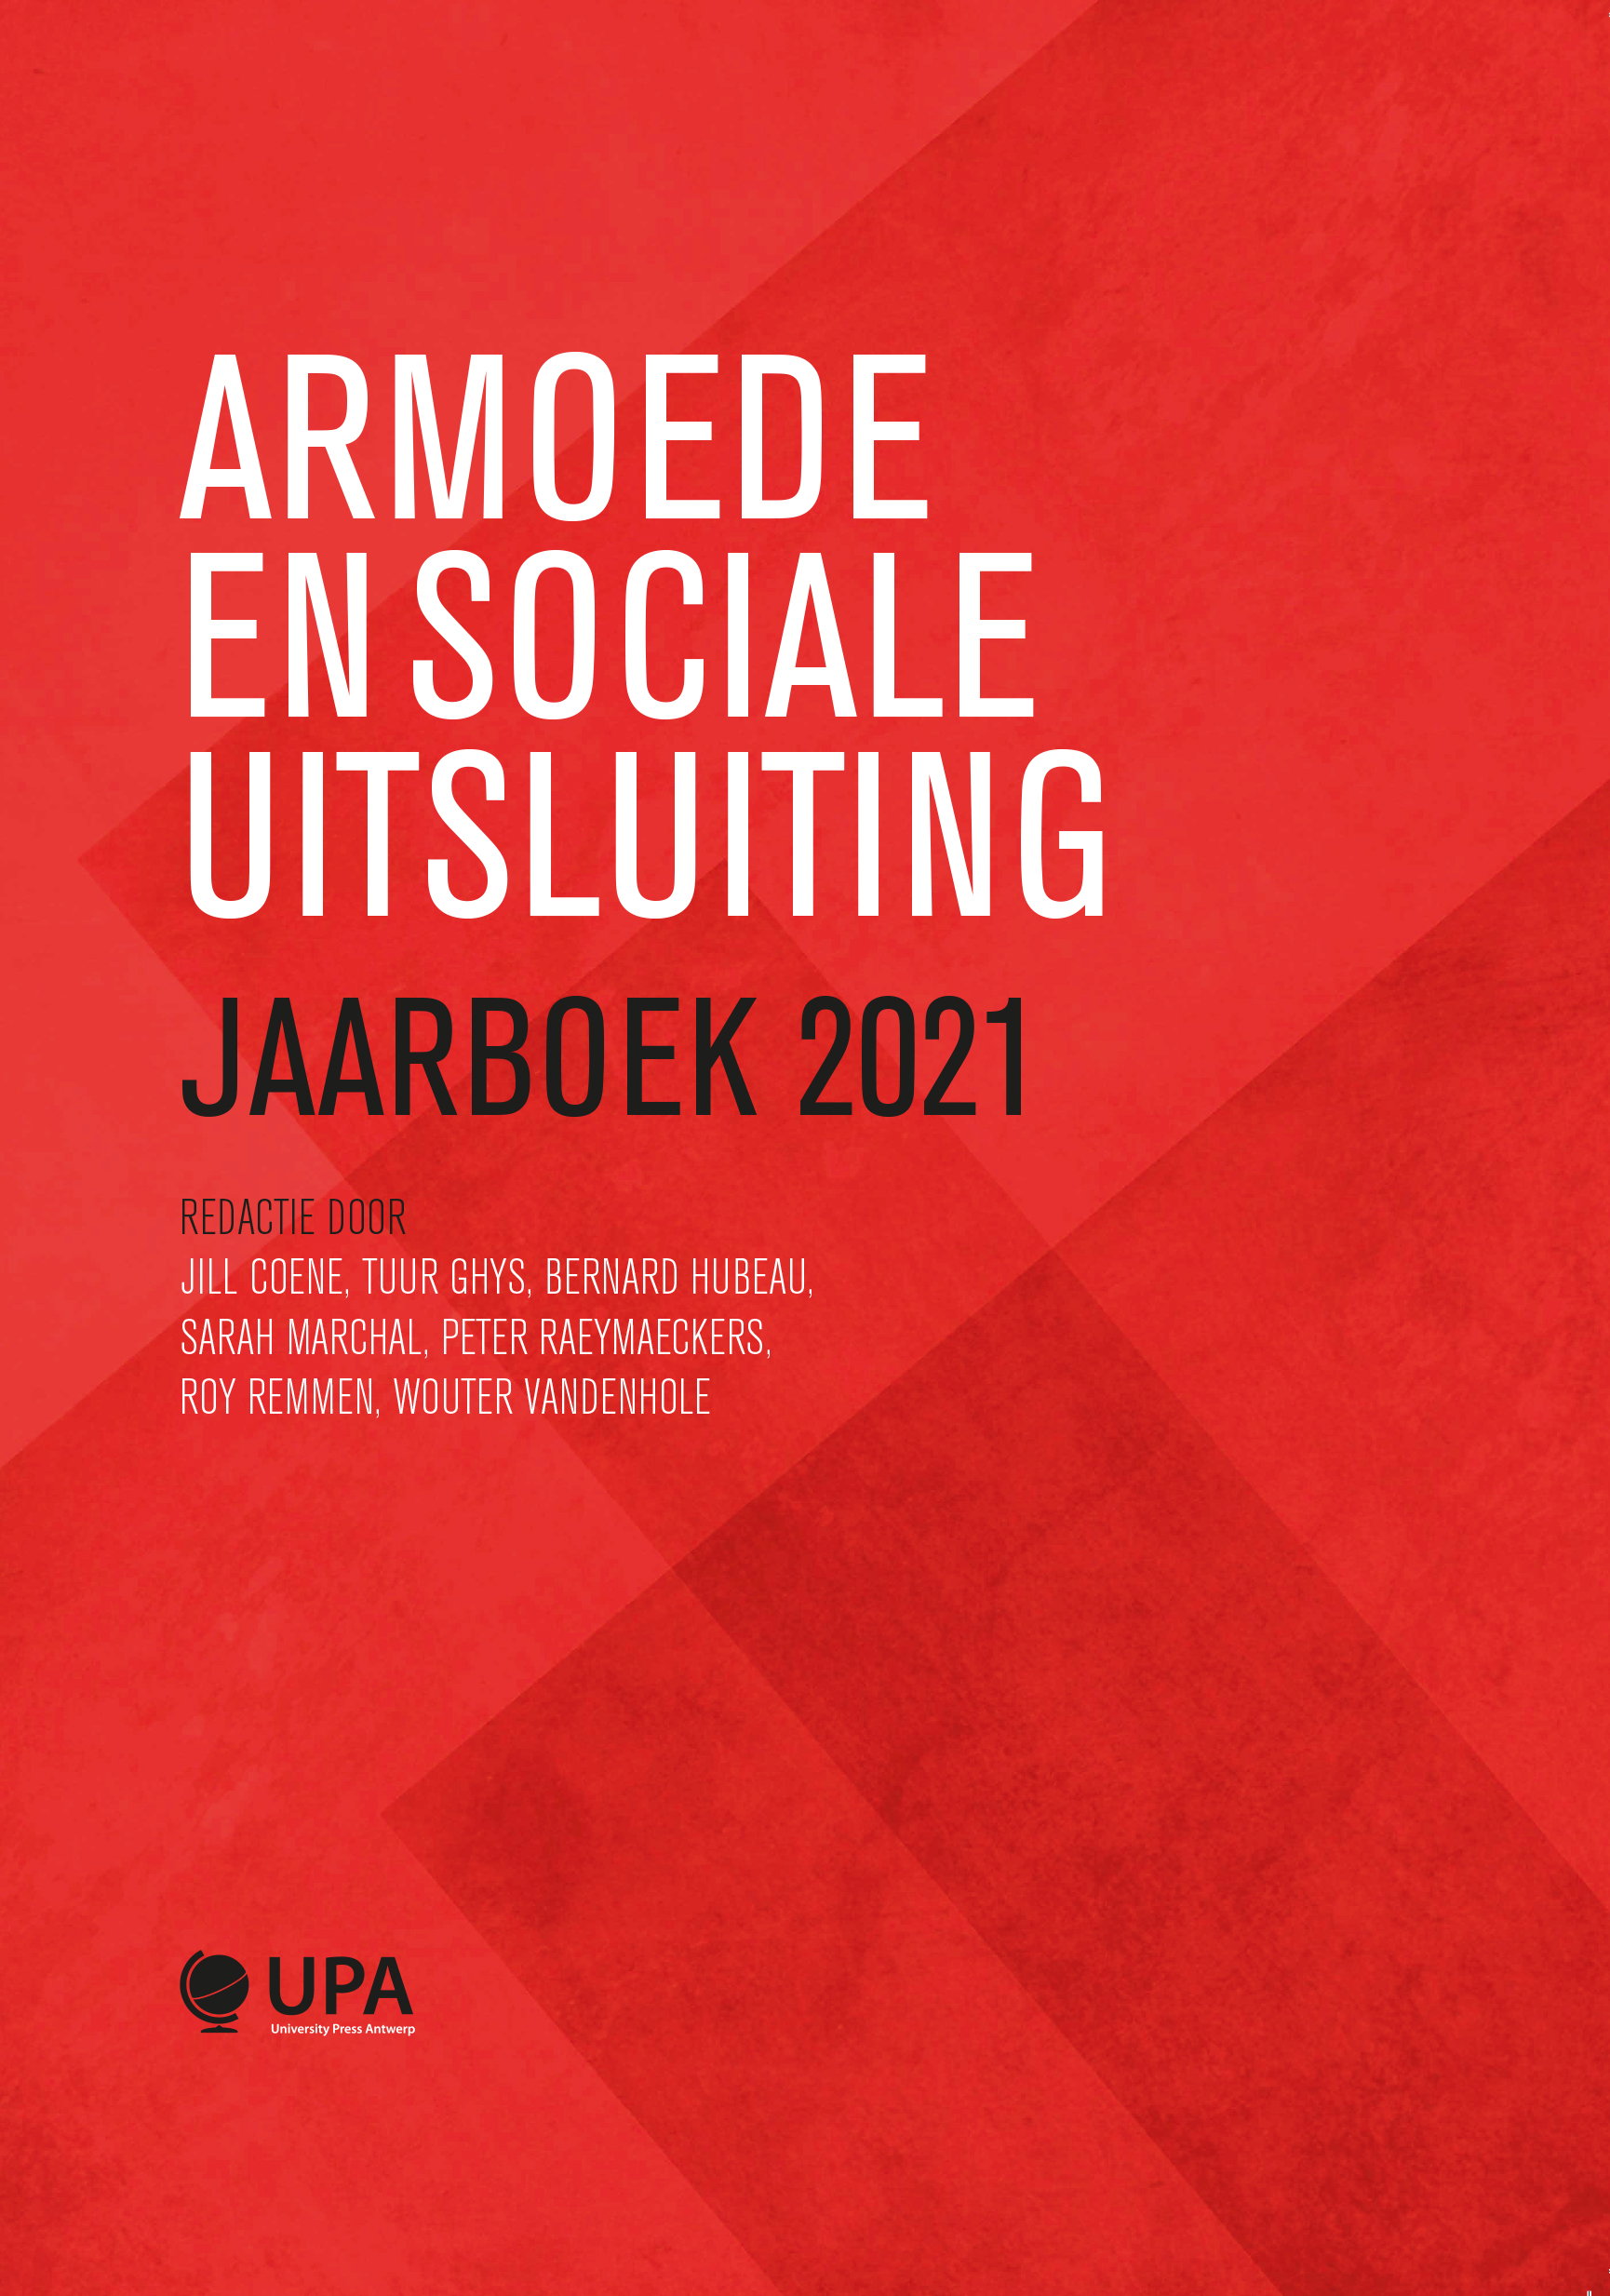 ARMOEDE EN SOCIALE UITSLUITING JAARBOEK 2021